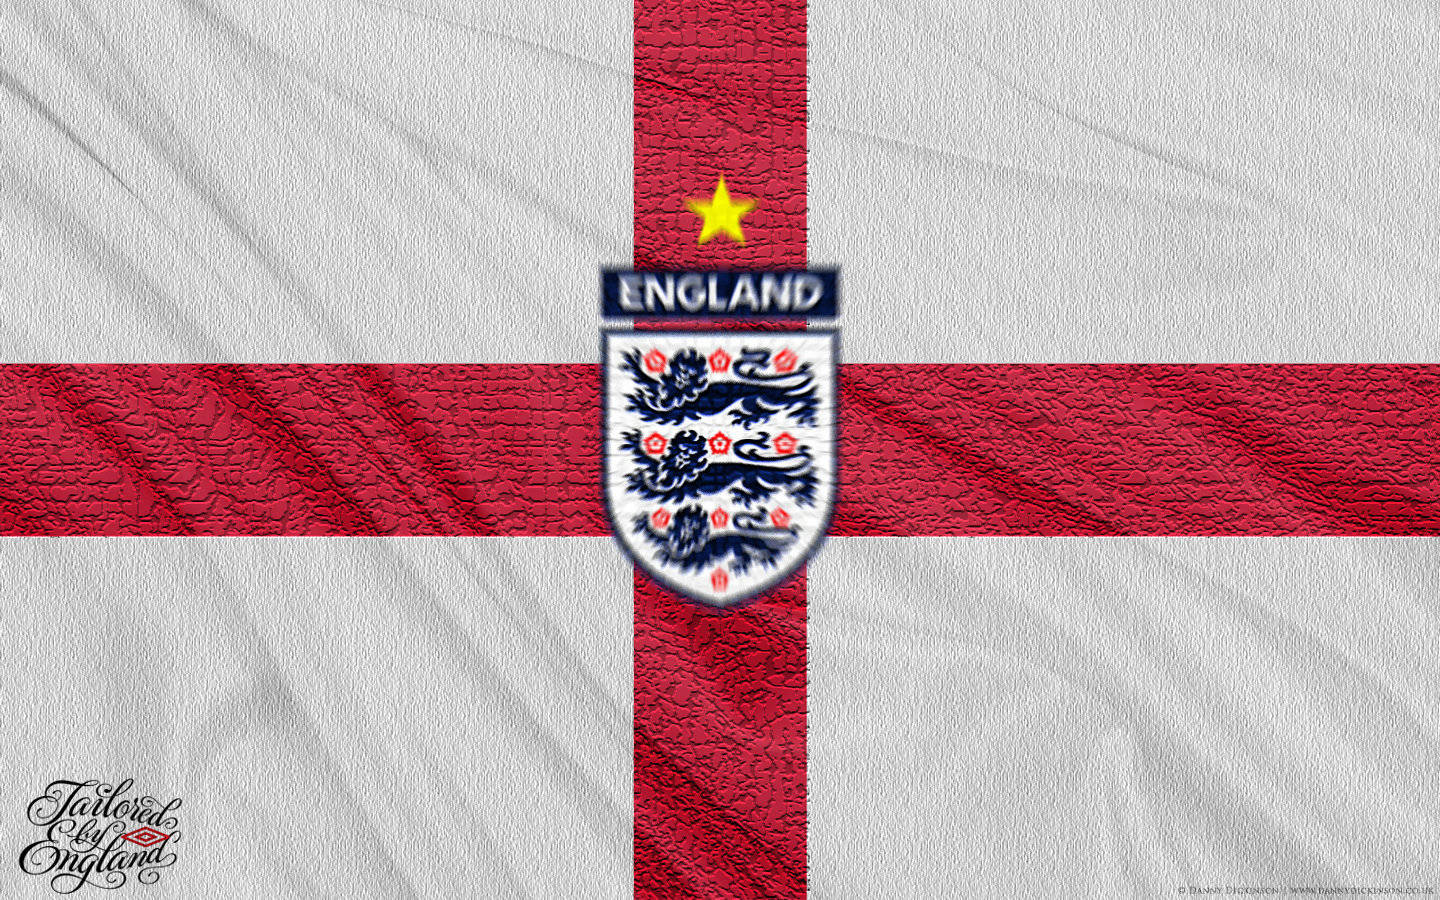 England Football Flag With Star